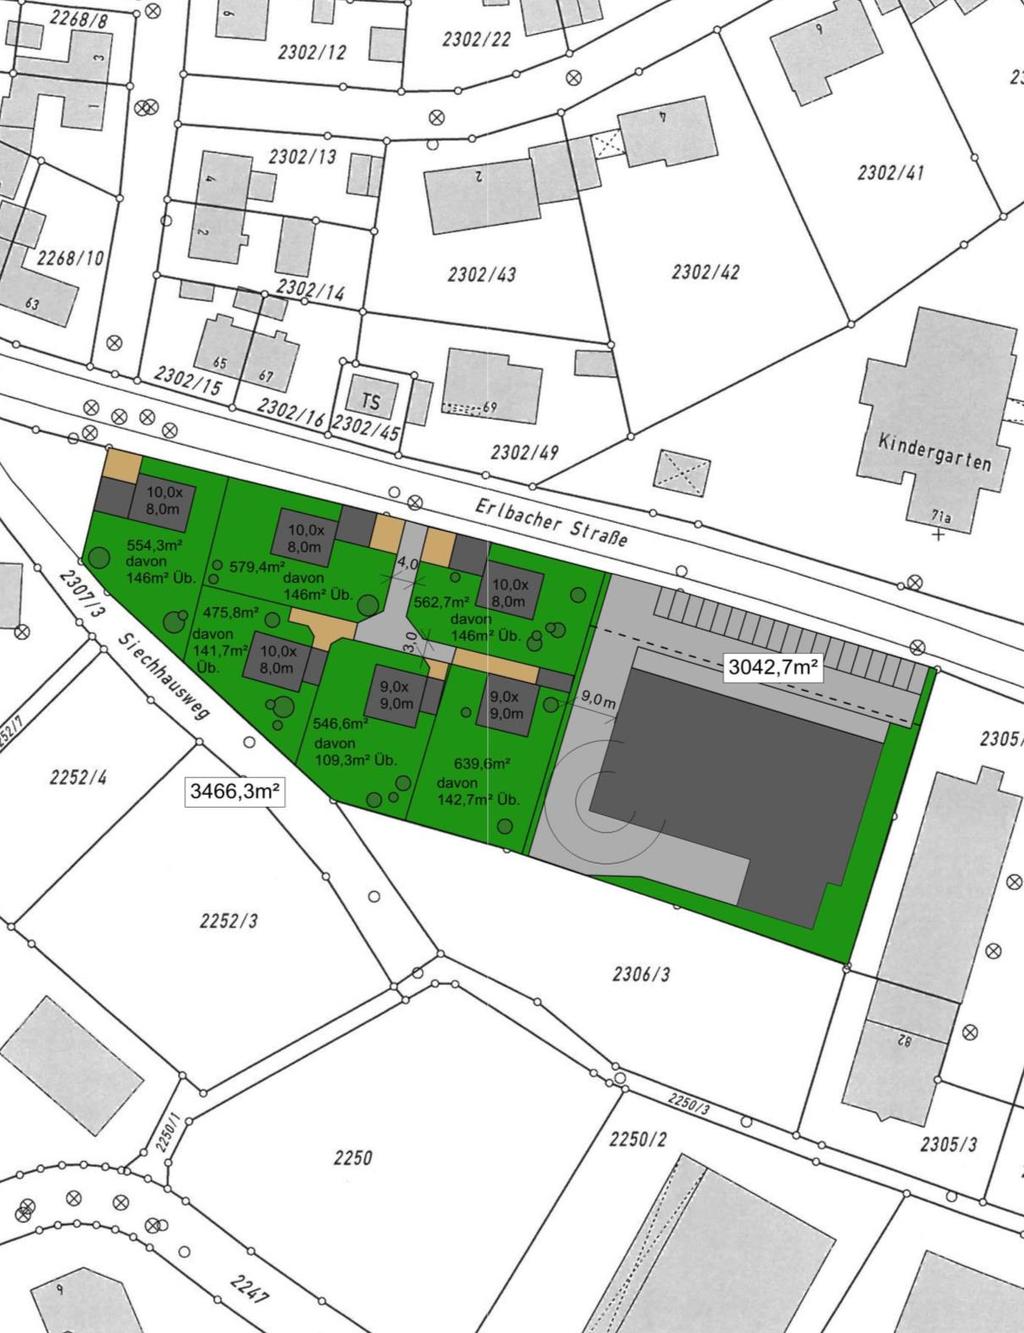 Lageplan: (Verwendung als Bestandsobjekt und Neubebauung der Parkplatzfläche) im Lageplan mit 6 EFH dargestellt.